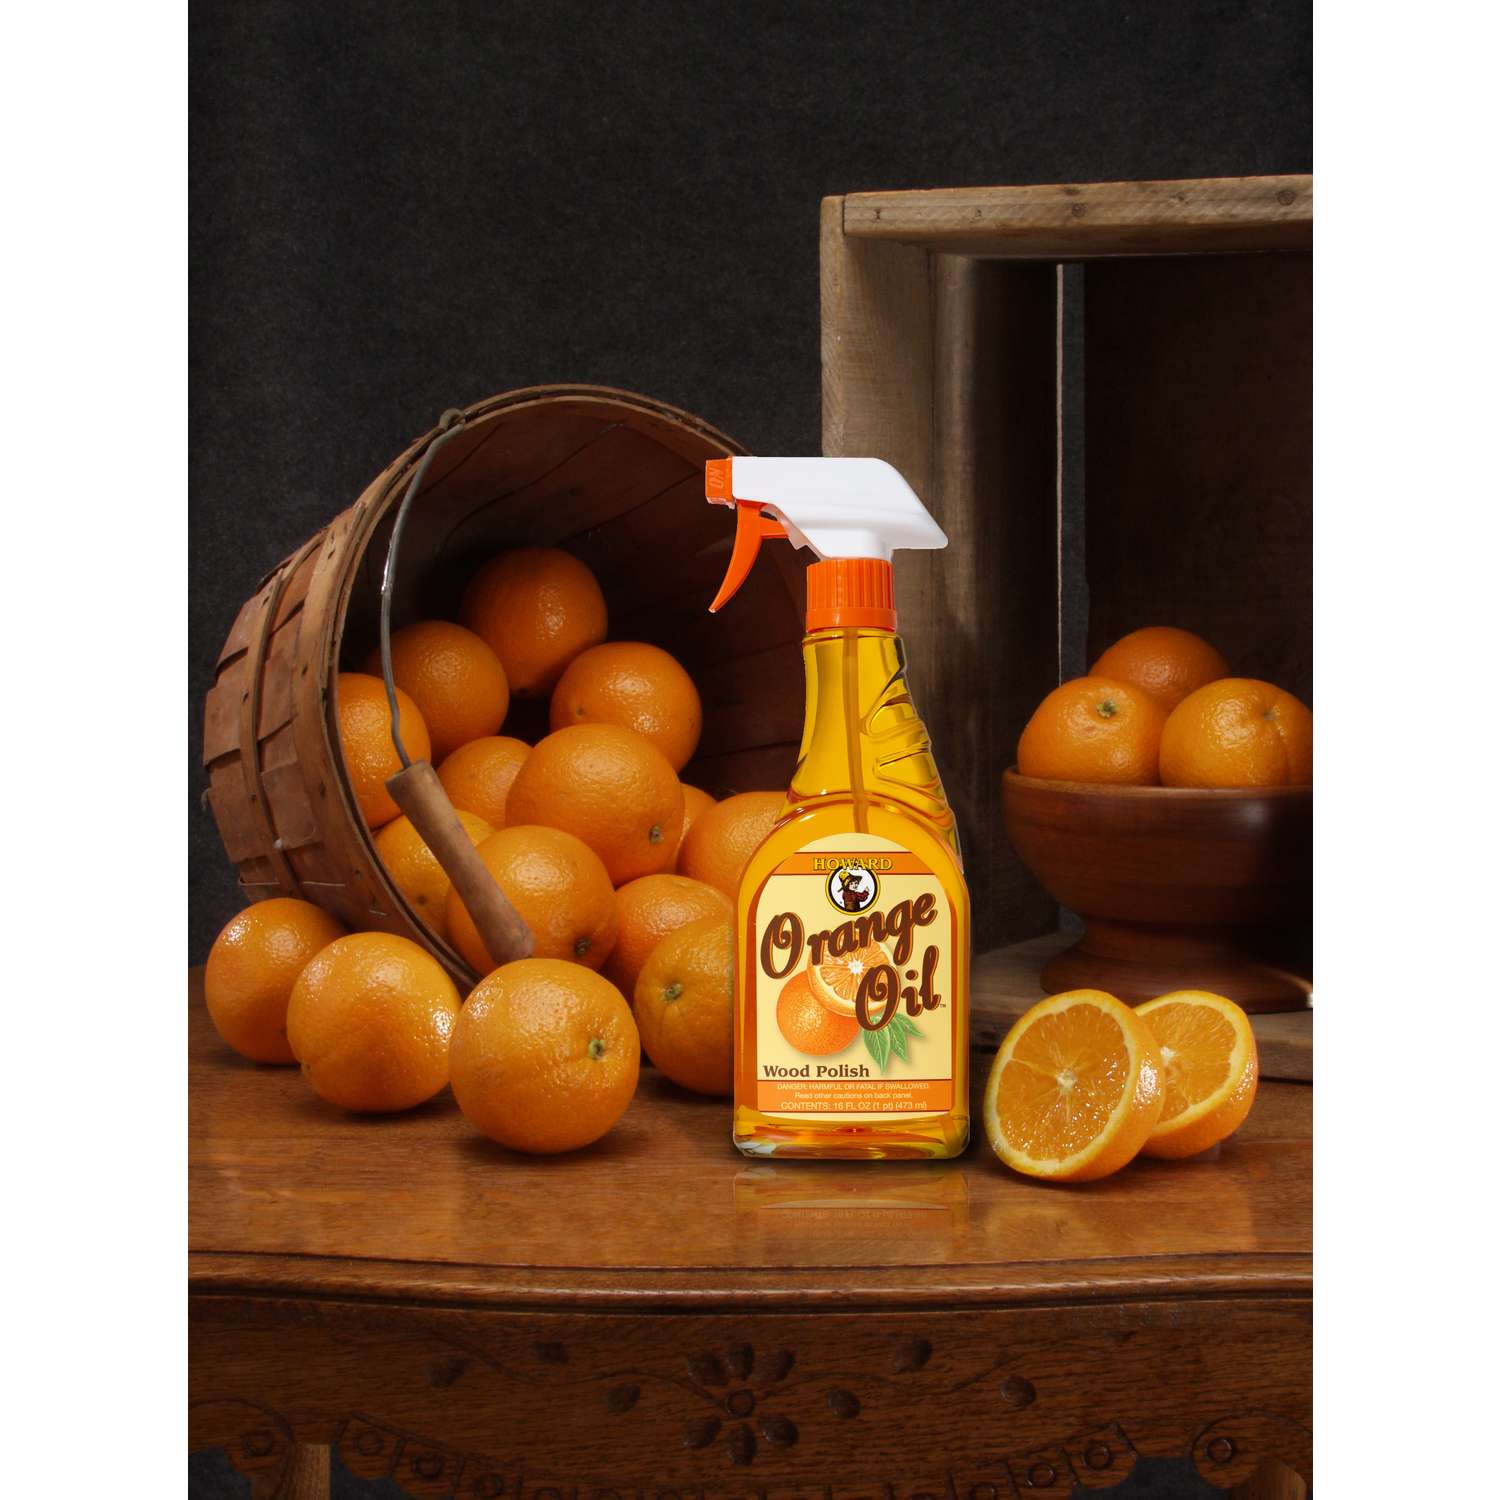 Orange Glo Limpiador y pulidor 2 en 1 para muebles de madera, 16 onzas (3)